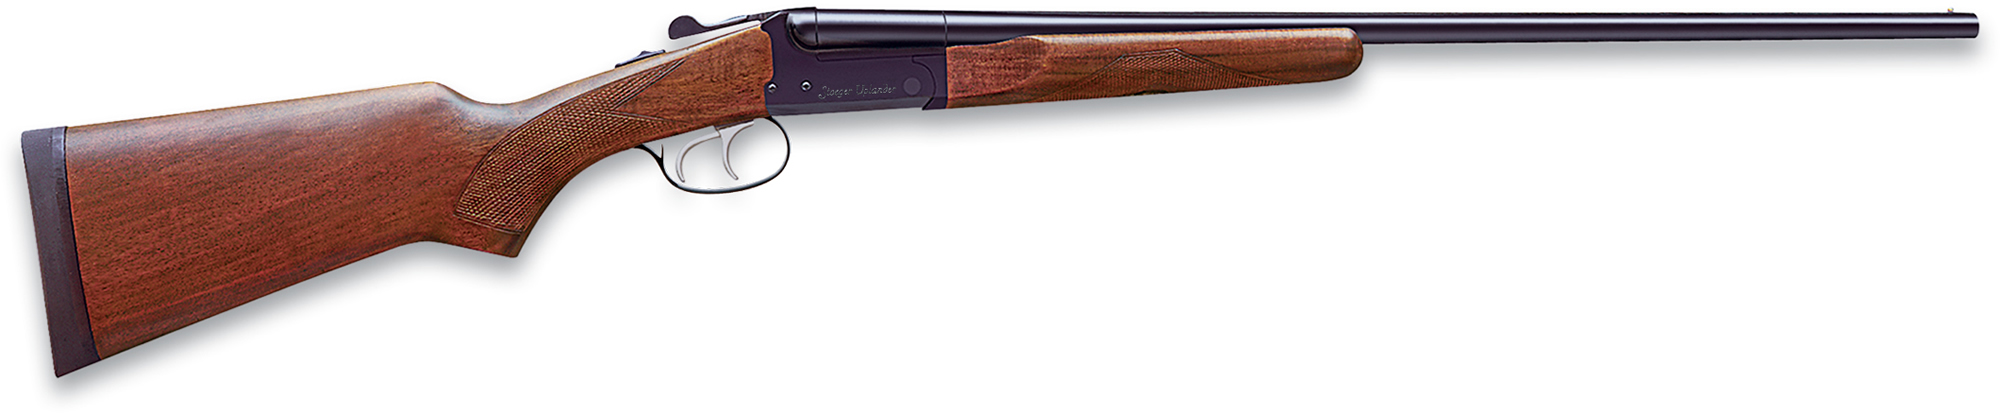 Stoeger Uplander Youth Short Side x Side Shotgun ST31135, 410 Gauge, 22", 3" Chmbr, A Grade Stock